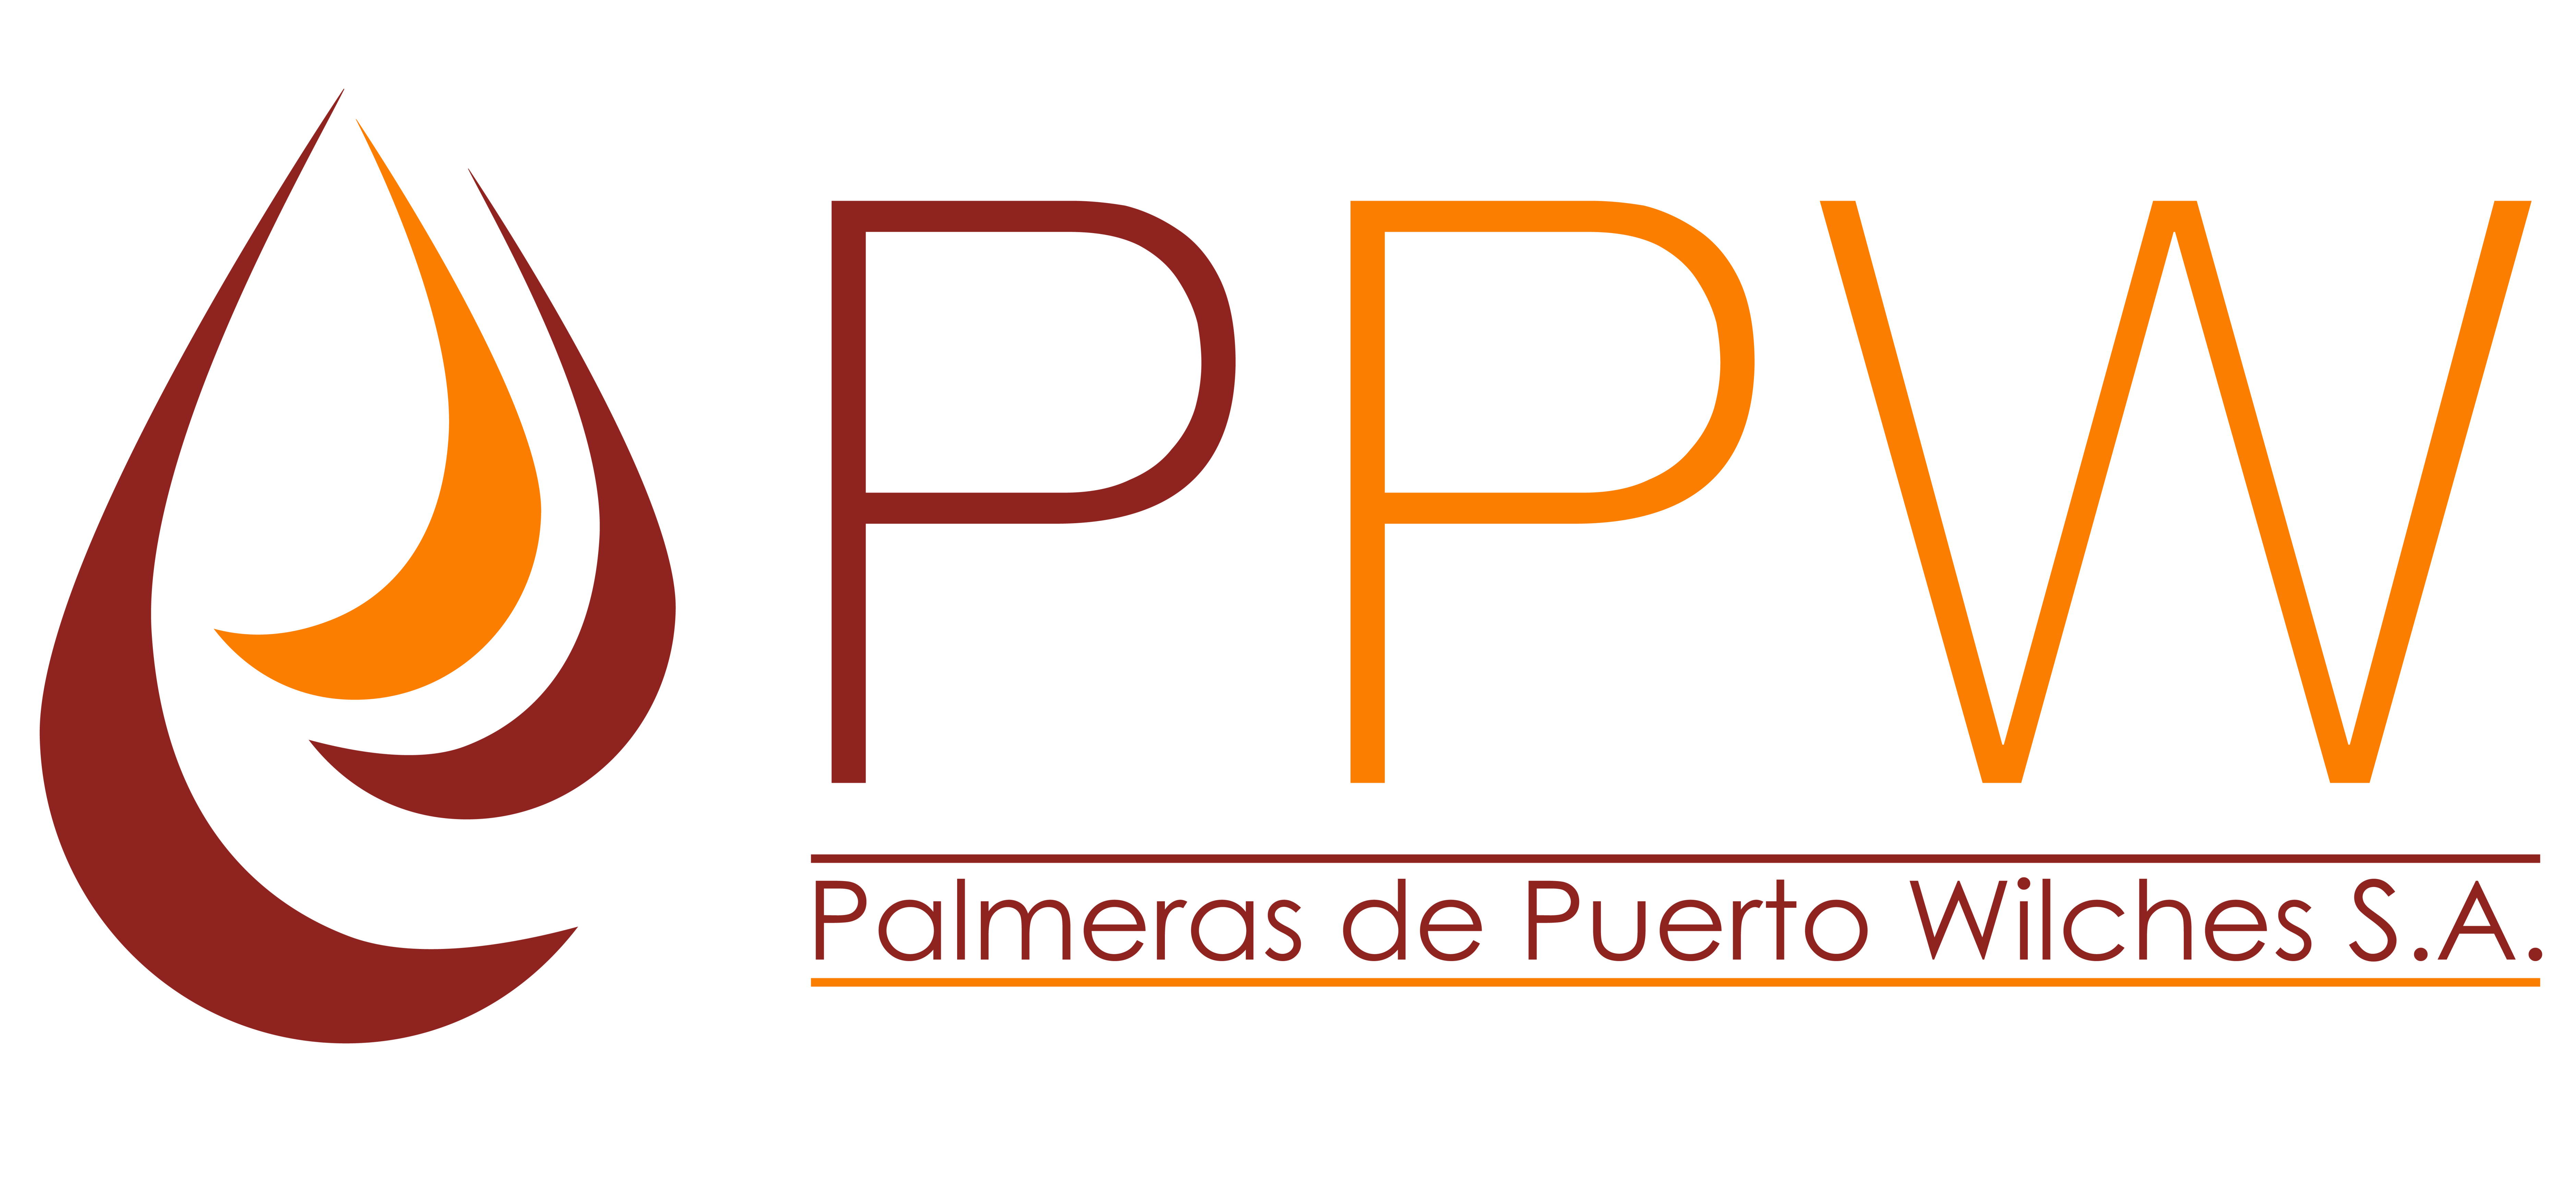 Palmeras de Puerto Wilches S.A.